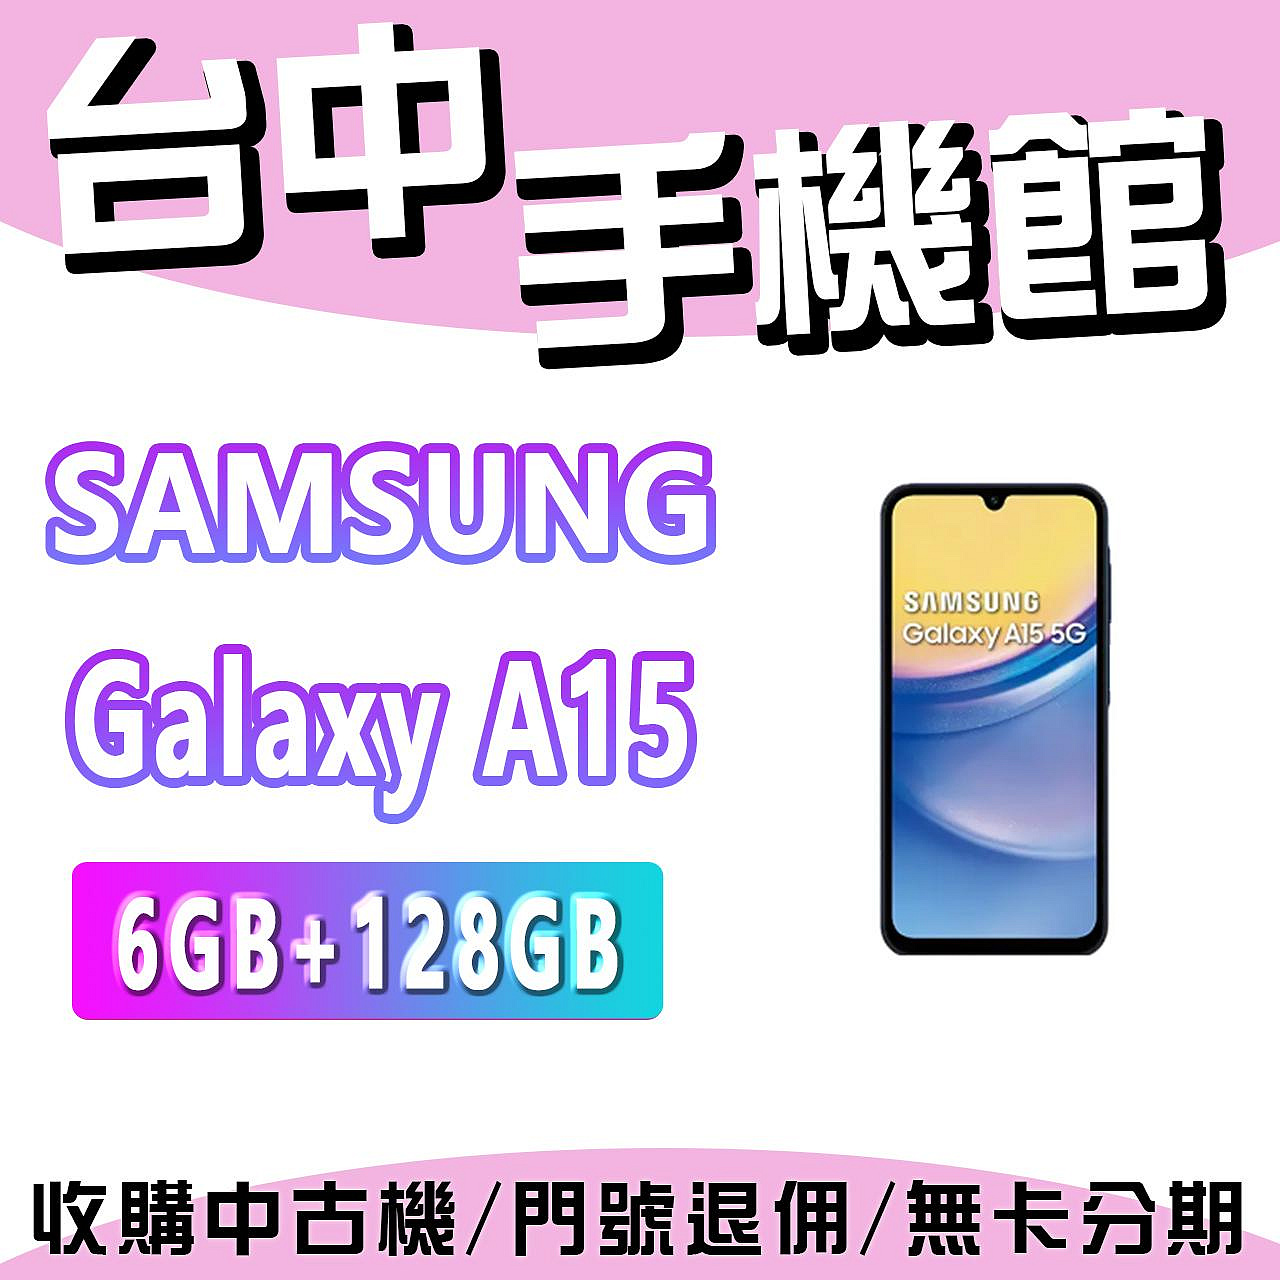 【台中手機館】SAMSUNG Galaxy A15  5G【6+128】三星 空機 空機價 新機 公司貨